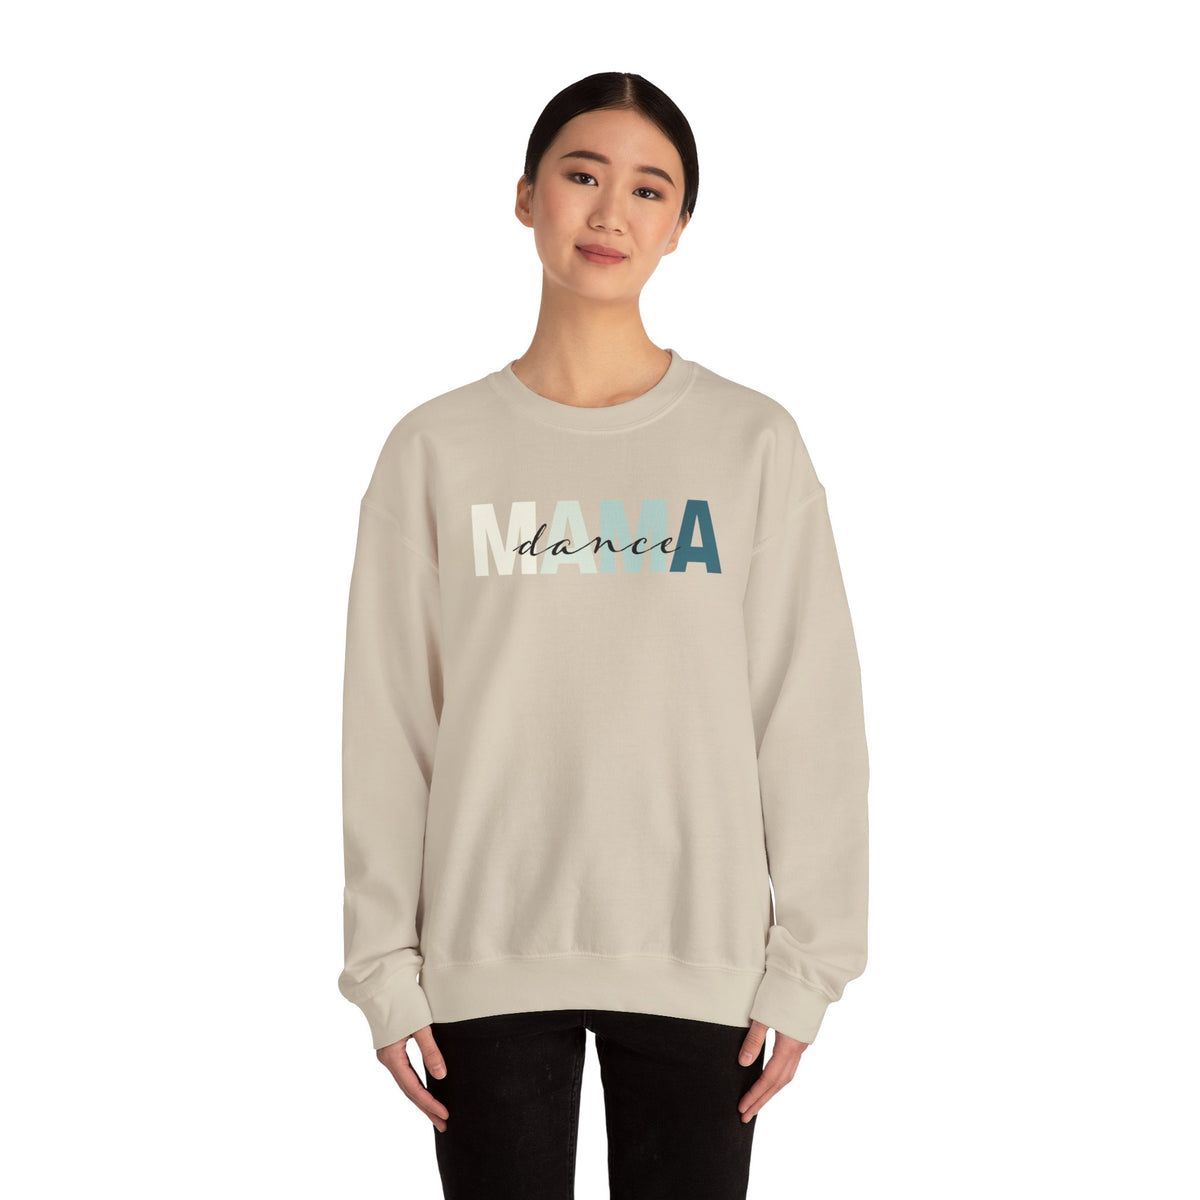 Dance Mama Sweatshirt | Dance Mom Sweatshirt | Dance Mom Gift